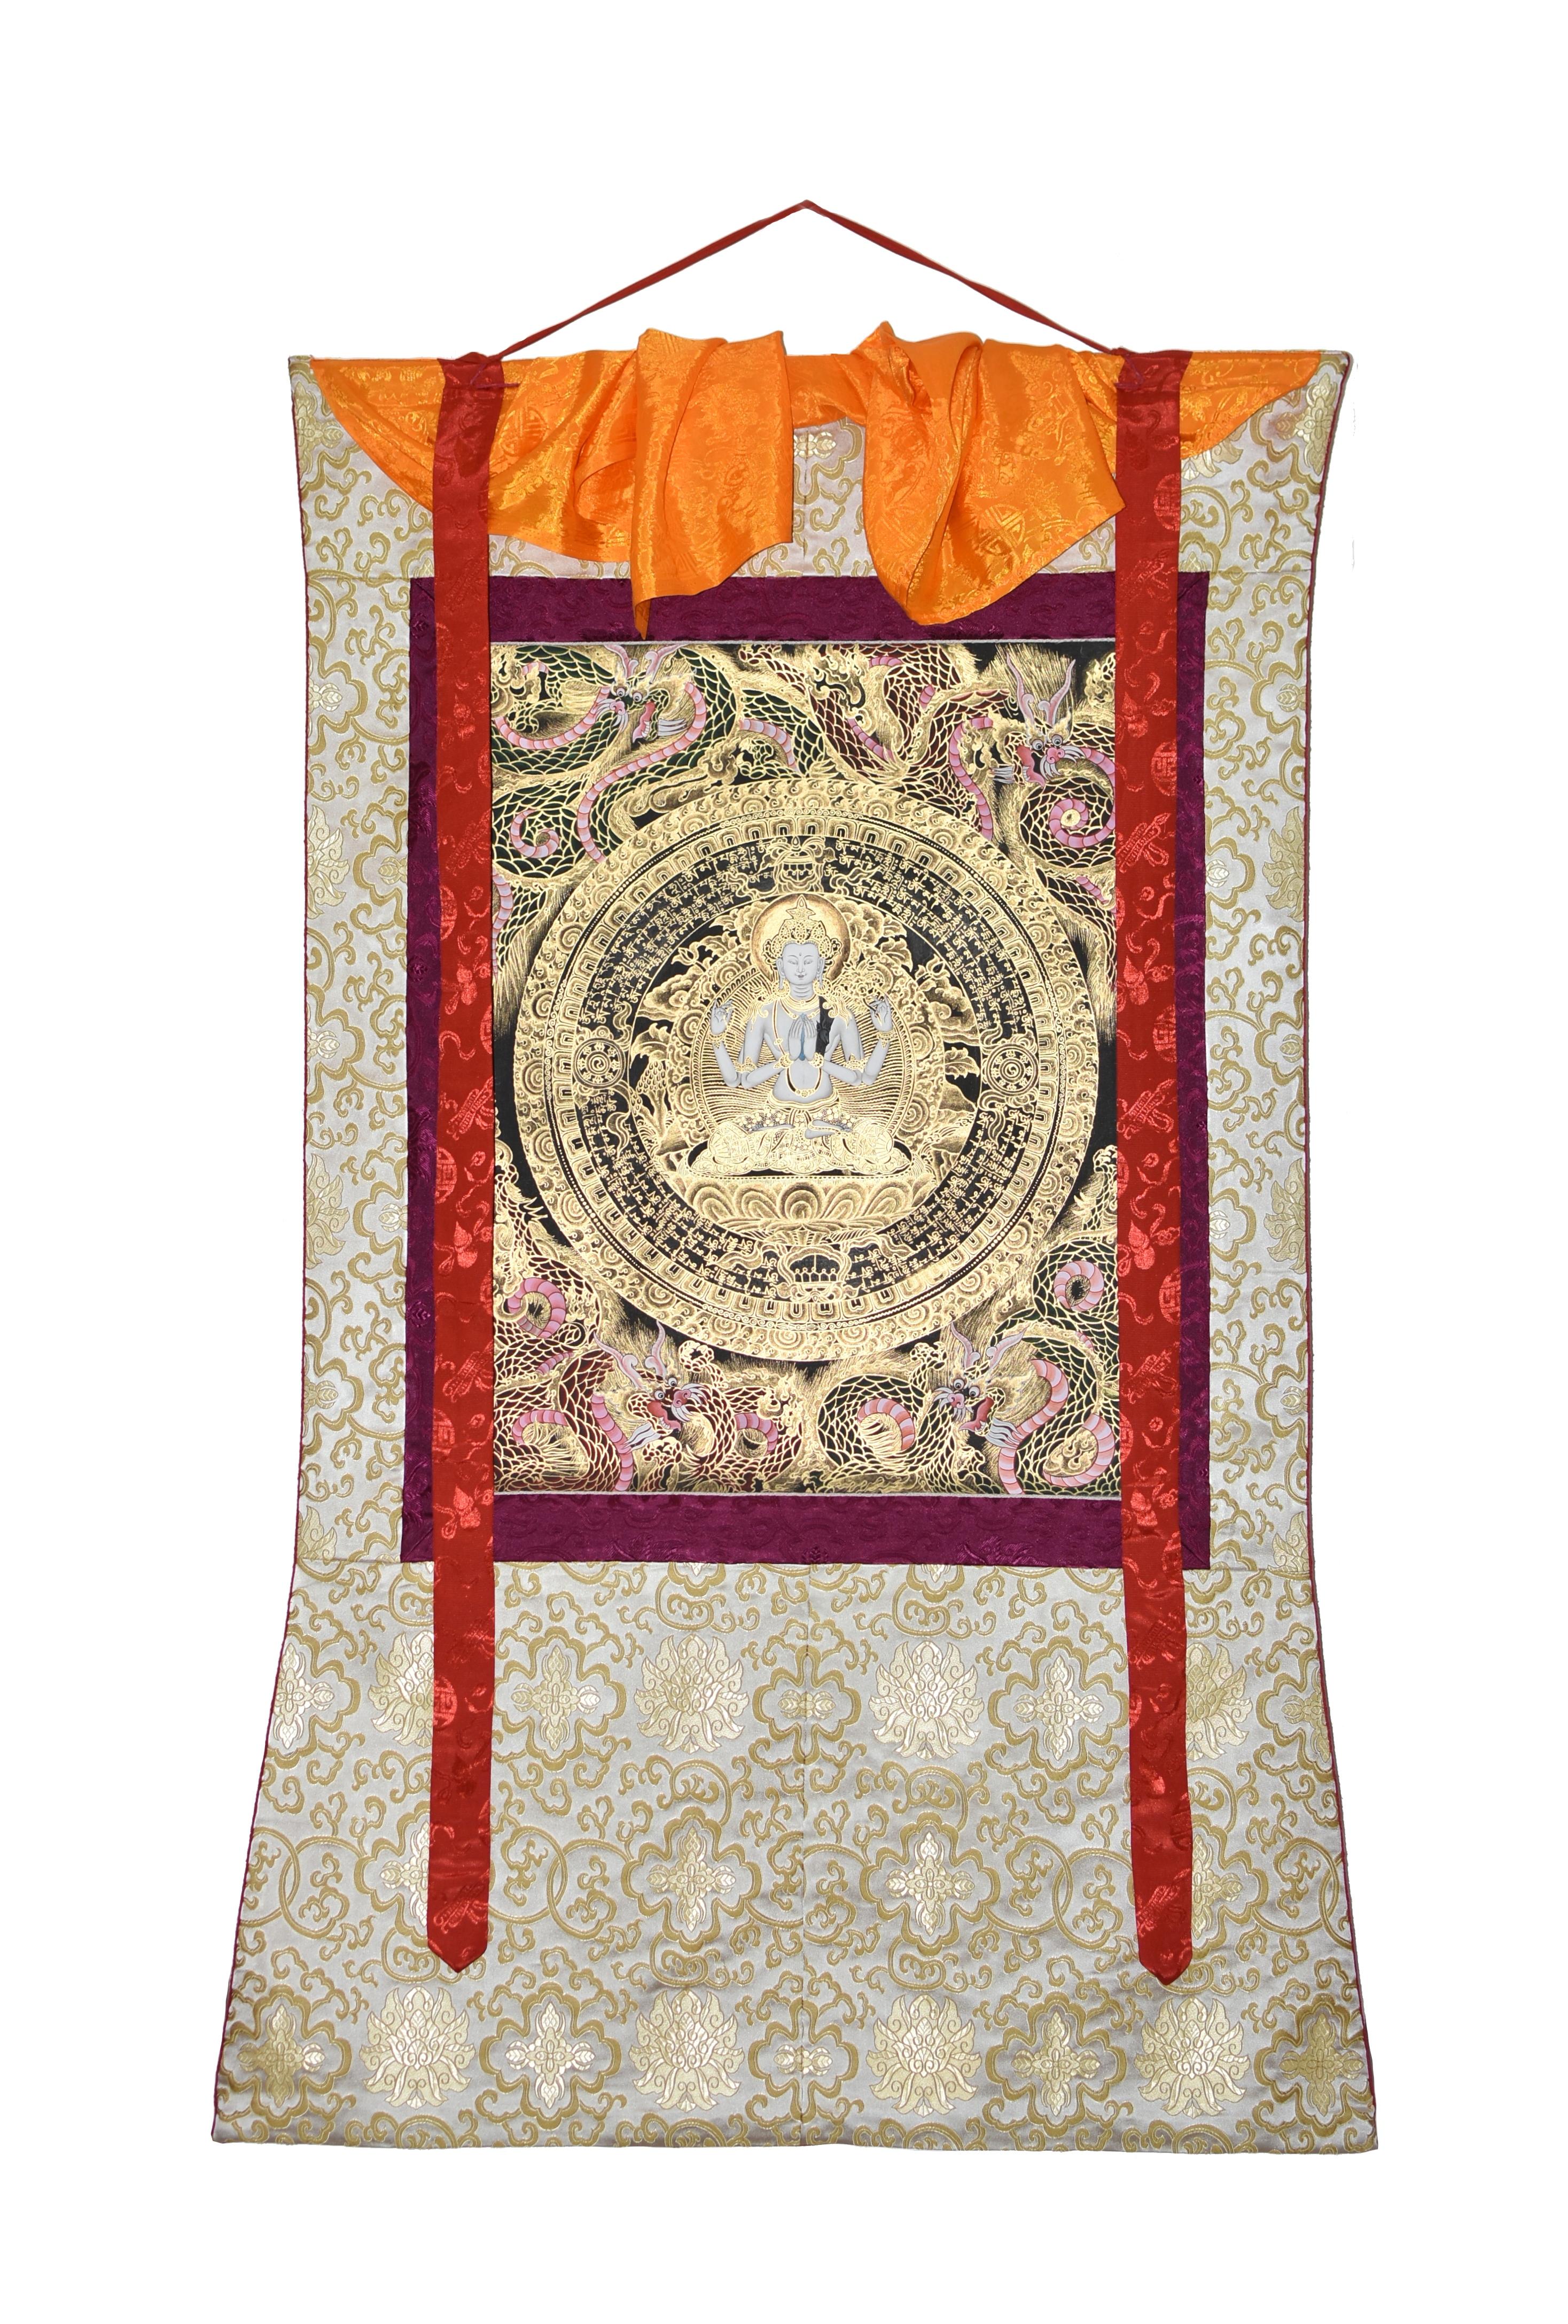 Ein sehr fein gemaltes, seltenes tibetisches Thangka mit der Darstellung des Gottes des Mitgefühls Chenrezig, der männlichen Form von Avalokitesvara und Guan Yin im chinesischen Buddhismus. Chenrezig sitzt königlich im Dhyana Asana auf dem